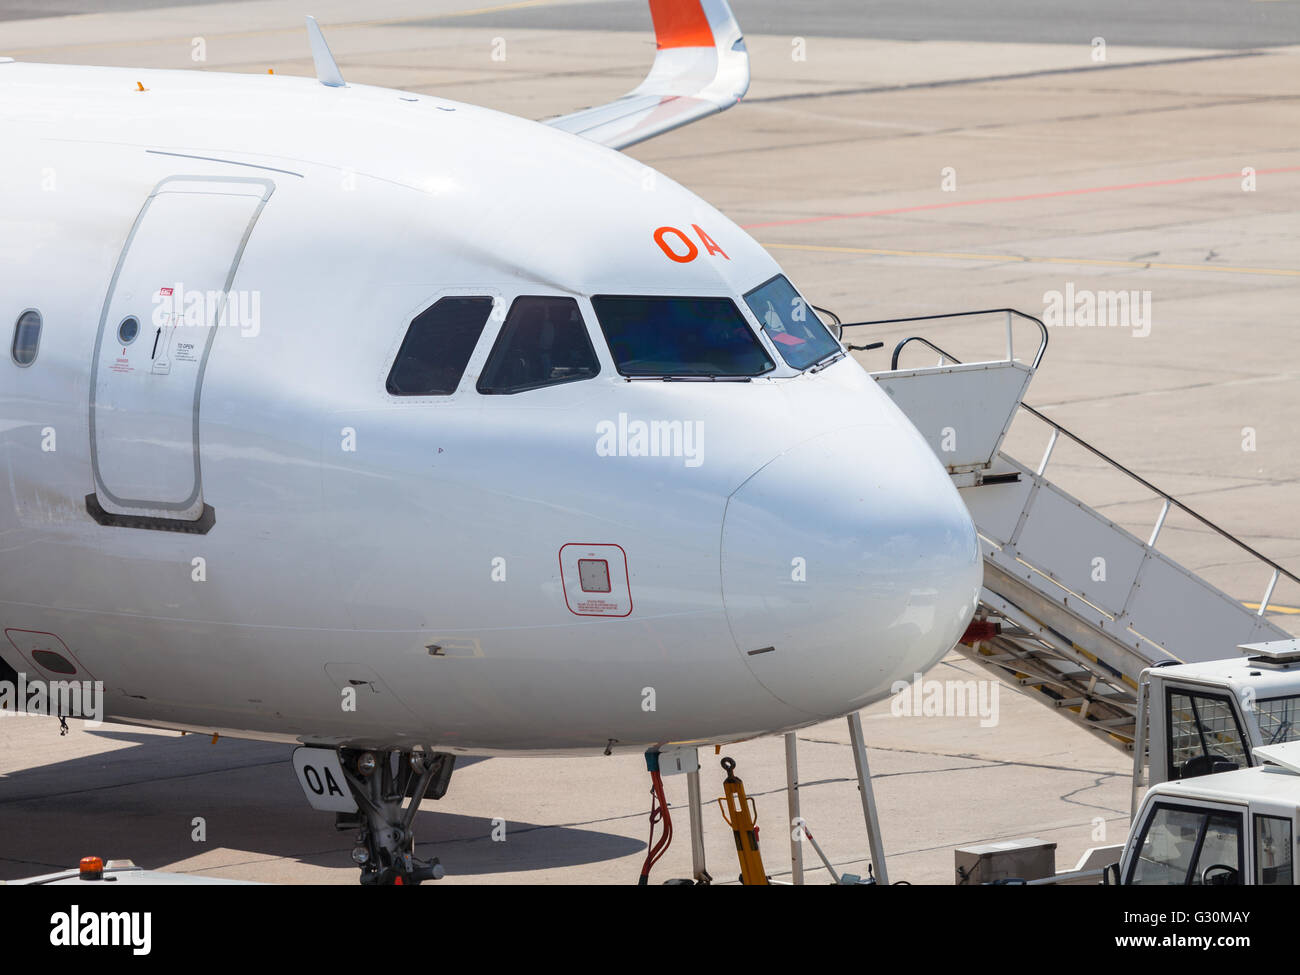 BERLIN / ALLEMAGNE - 4 juin 2016 : Airbus A 320 - 214 d'easyJet sur aéroport Schönefeld, Berlin / Allemagne le 4 juin, 2016 Banque D'Images